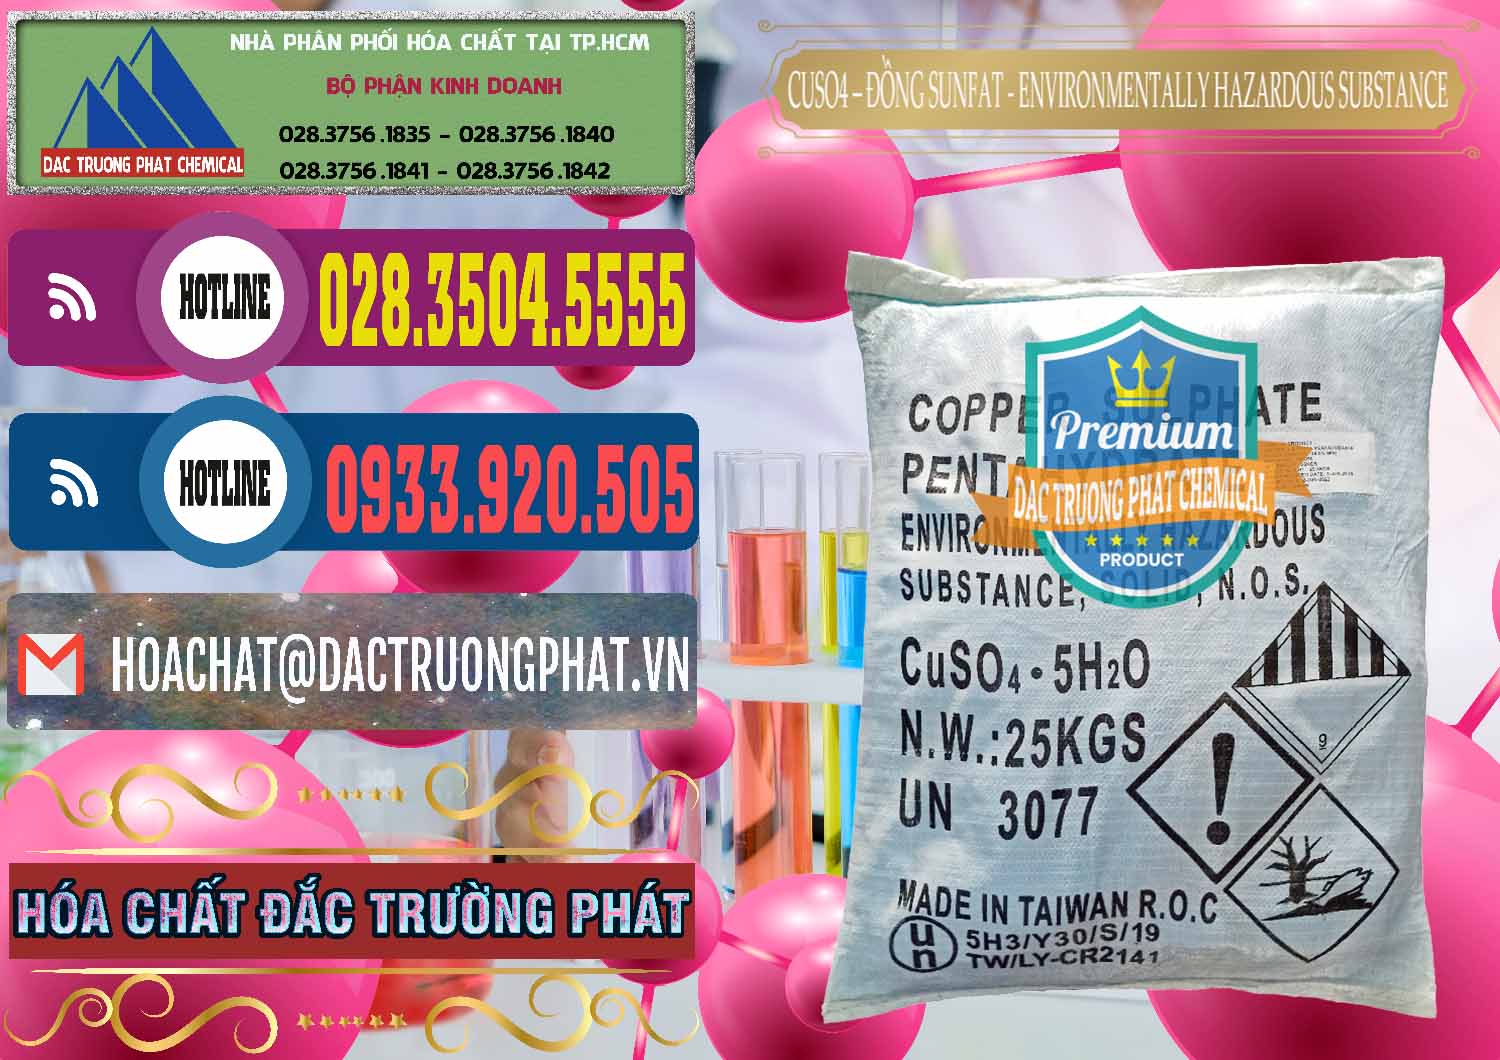 Nơi chuyên phân phối & bán CuSO4 – Đồng Sunfat Đài Loan Taiwan - 0059 - Công ty bán ( phân phối ) hóa chất tại TP.HCM - muabanhoachat.com.vn